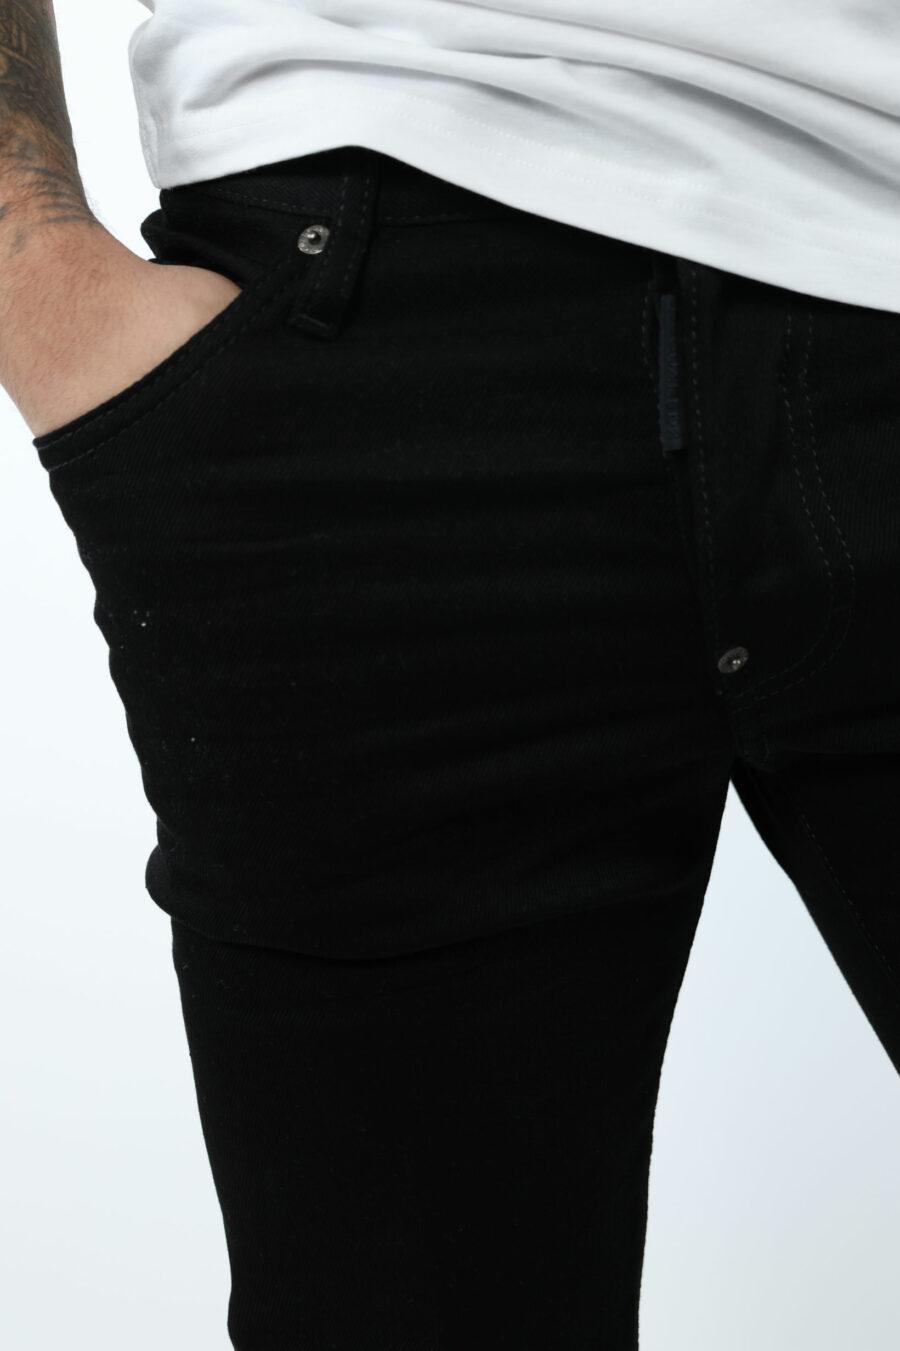 Pantalón vaquero negro "skater jean" con logo - 8054148284022 1